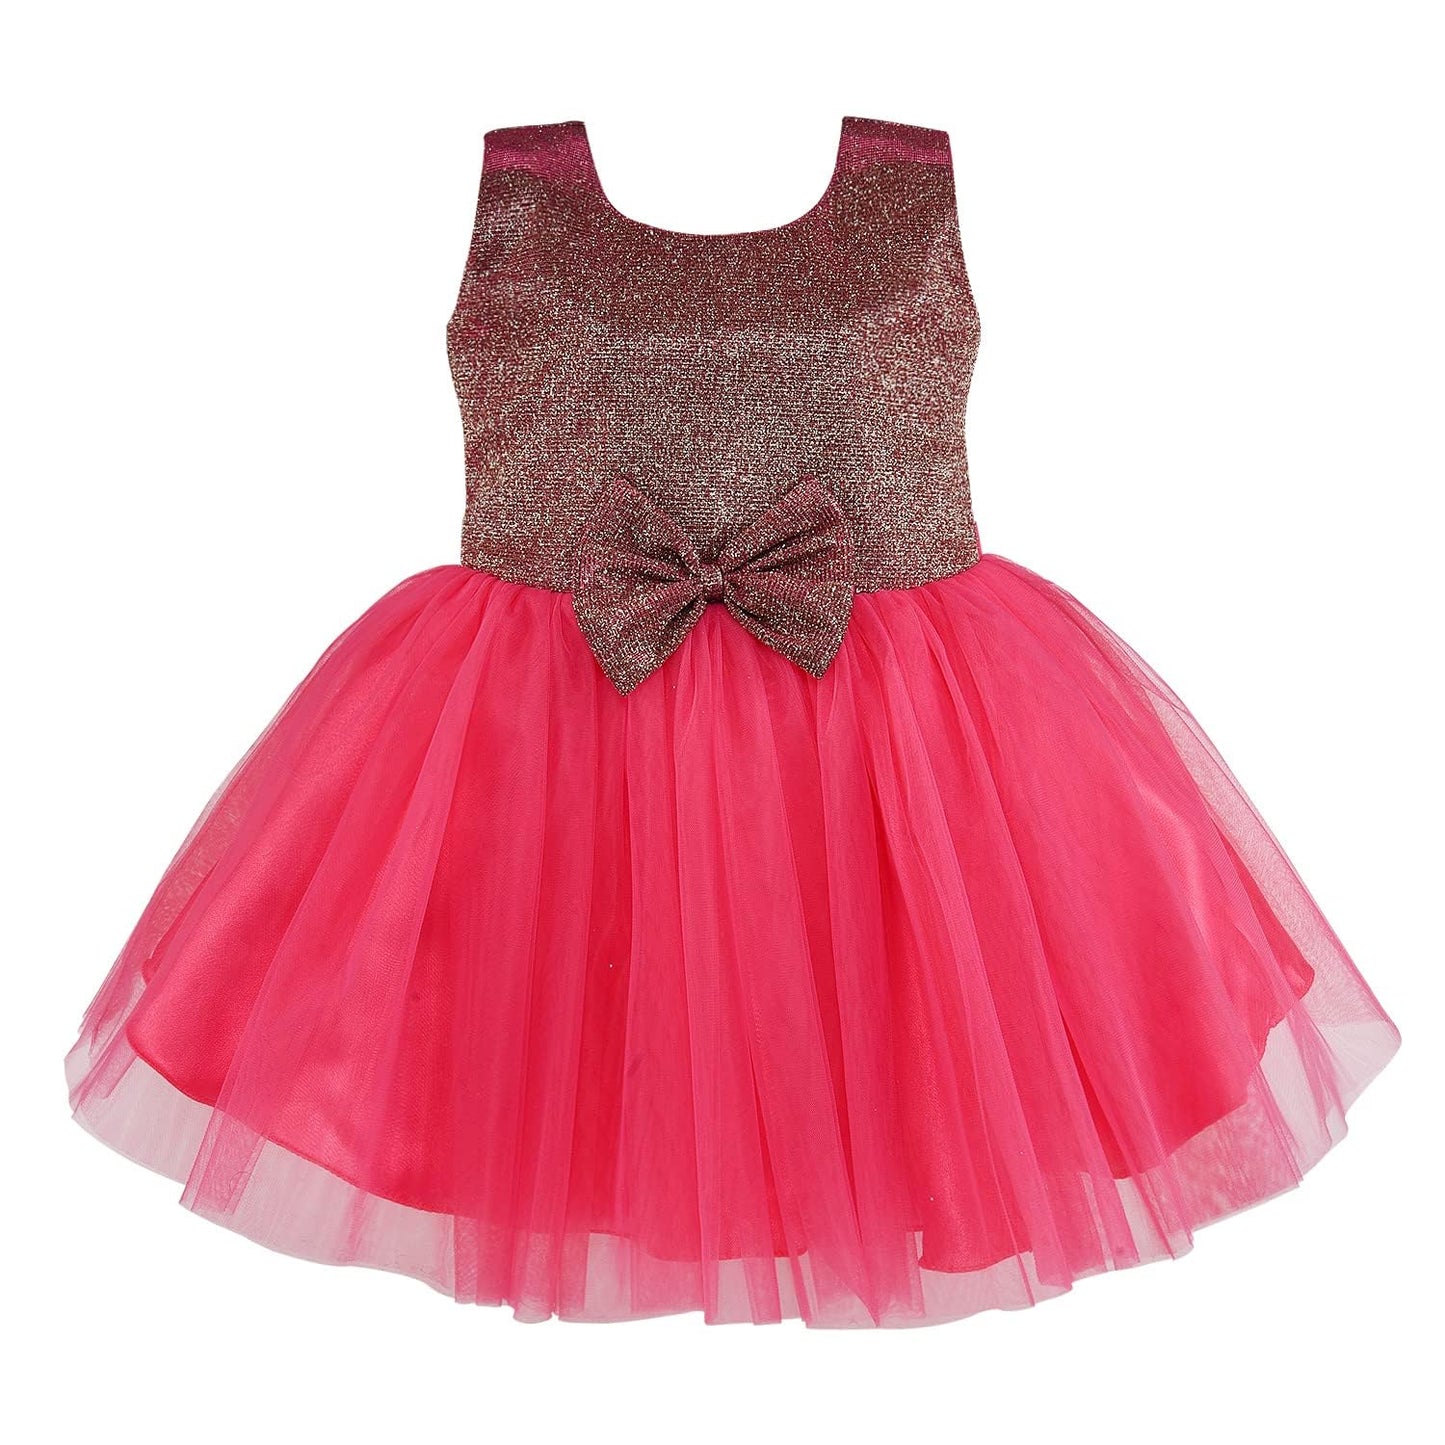 Wish Karo baby girls partywear frocks dress for girls fe3132bwnJKTMLTF